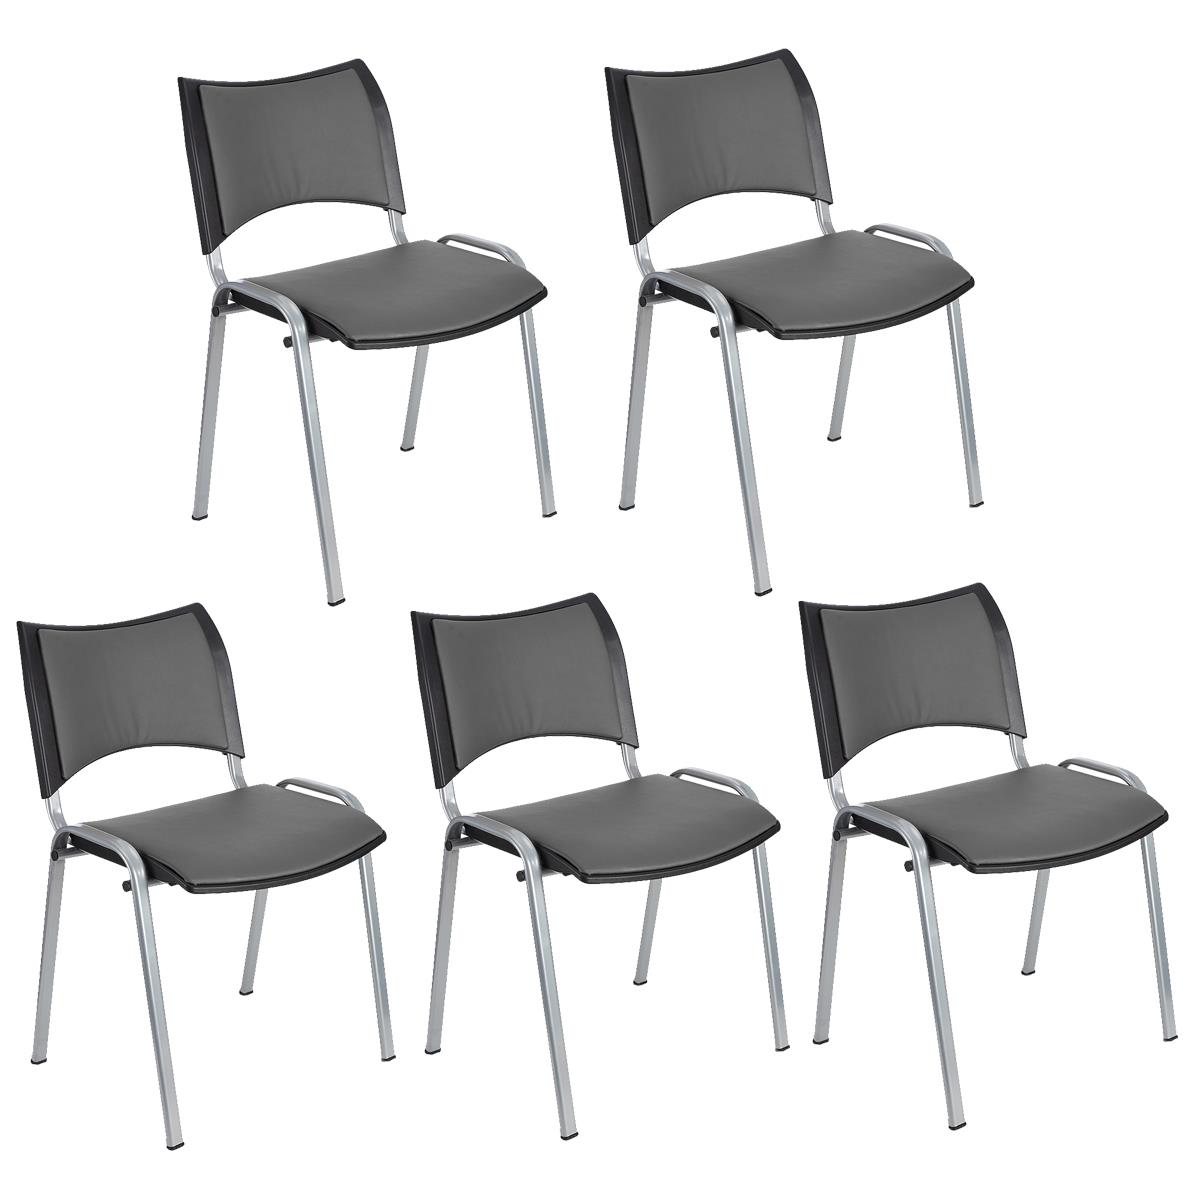 Lote 5 Cadeiras de Visita ROMEL PELE, Prática e Empilhável, Pernas Cinza, Cinzento